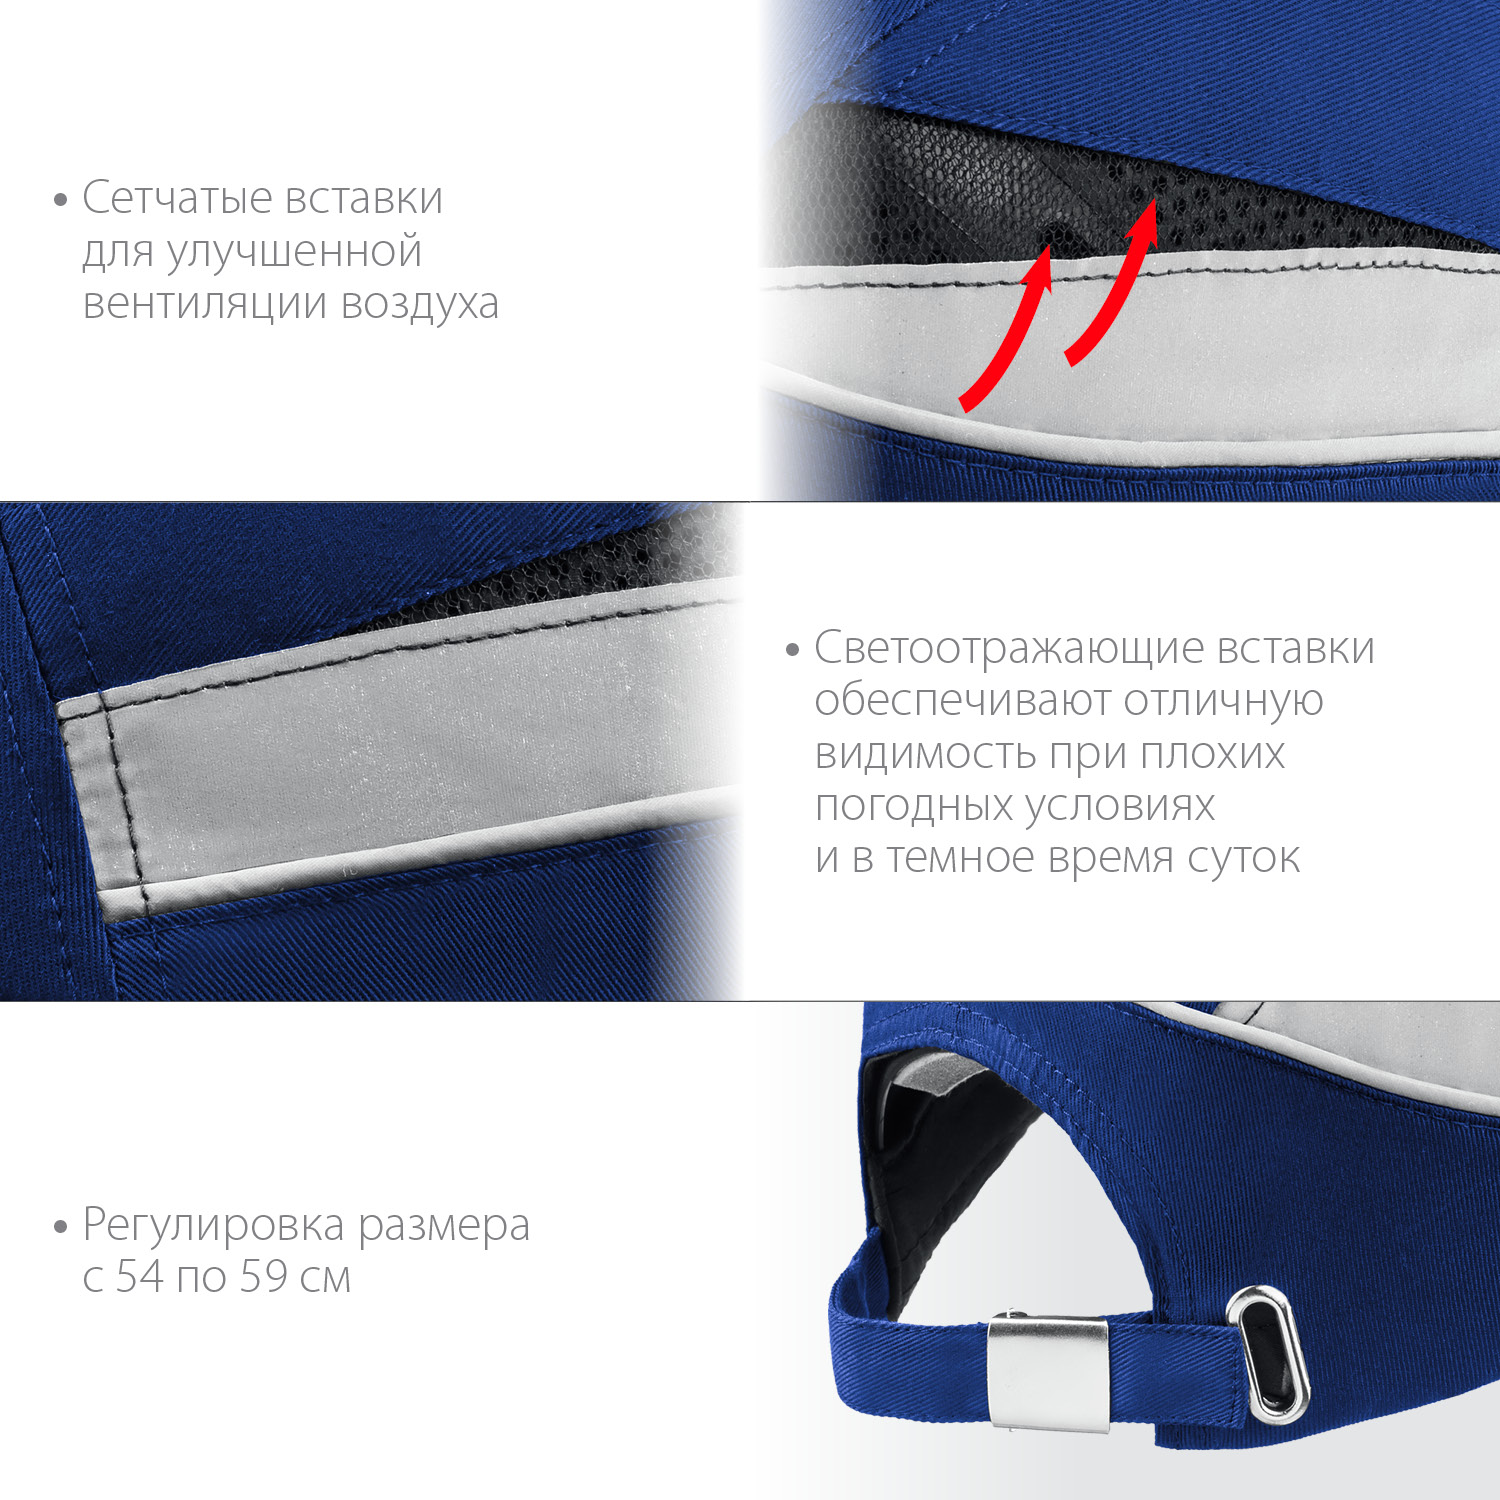 ЗУБР БИНОМ, синяя, ударопрочный корпус, козырёк 55 мм, размер от 54 до 59 см, защитная каскетка, Профессионал (11095)